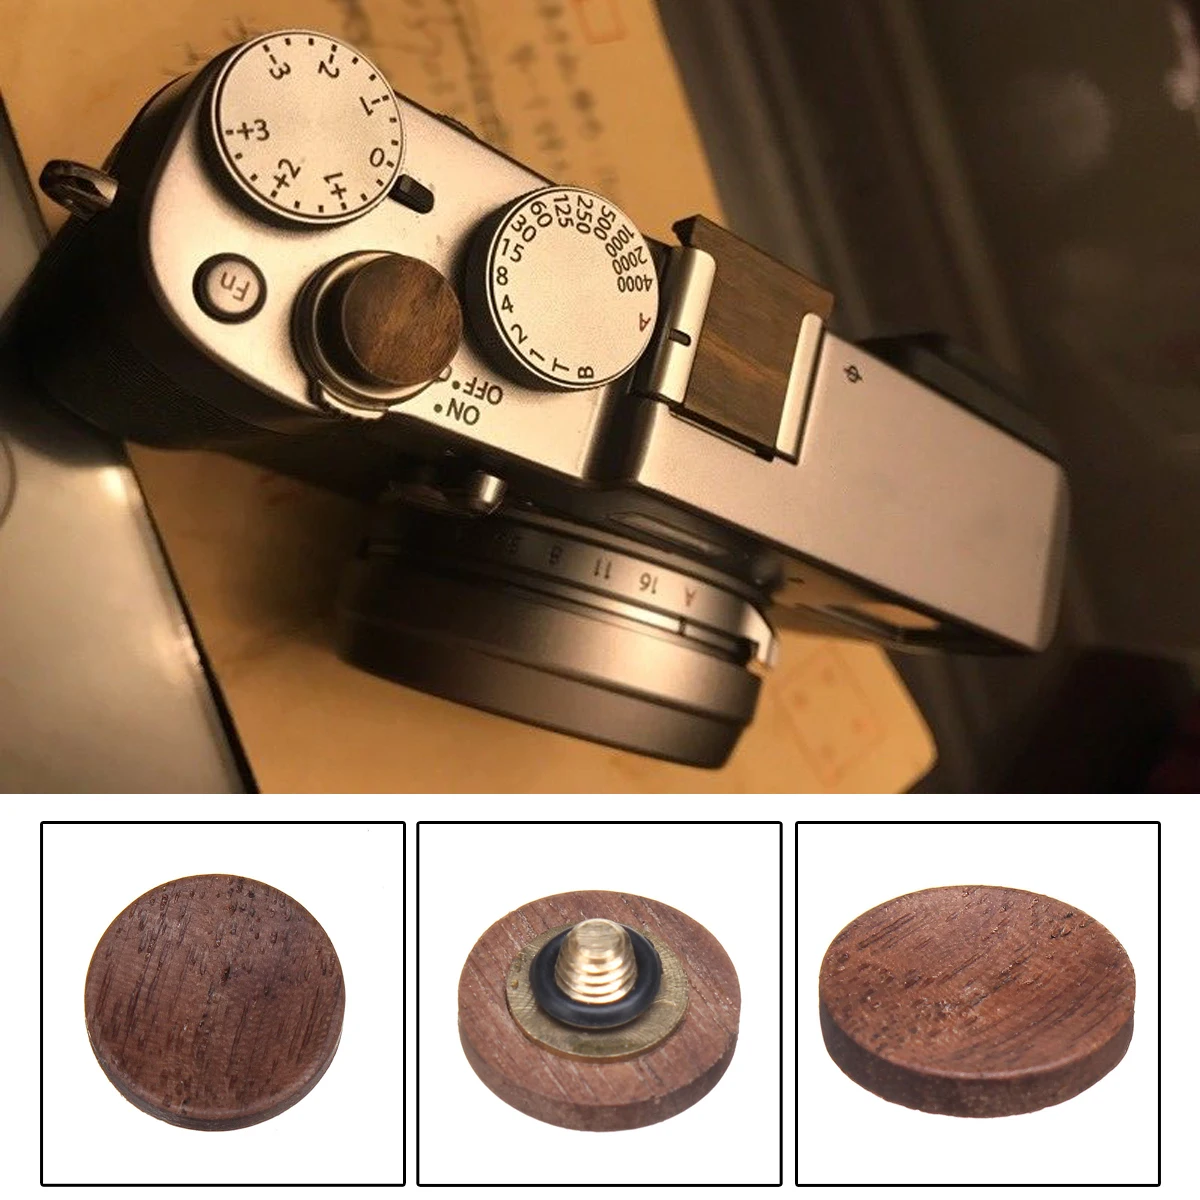 Деревянная поверхность камеры Мягкая кнопка спуска затвора для Fuji X100F для FujiFilm X100F камеры запасные аксессуары